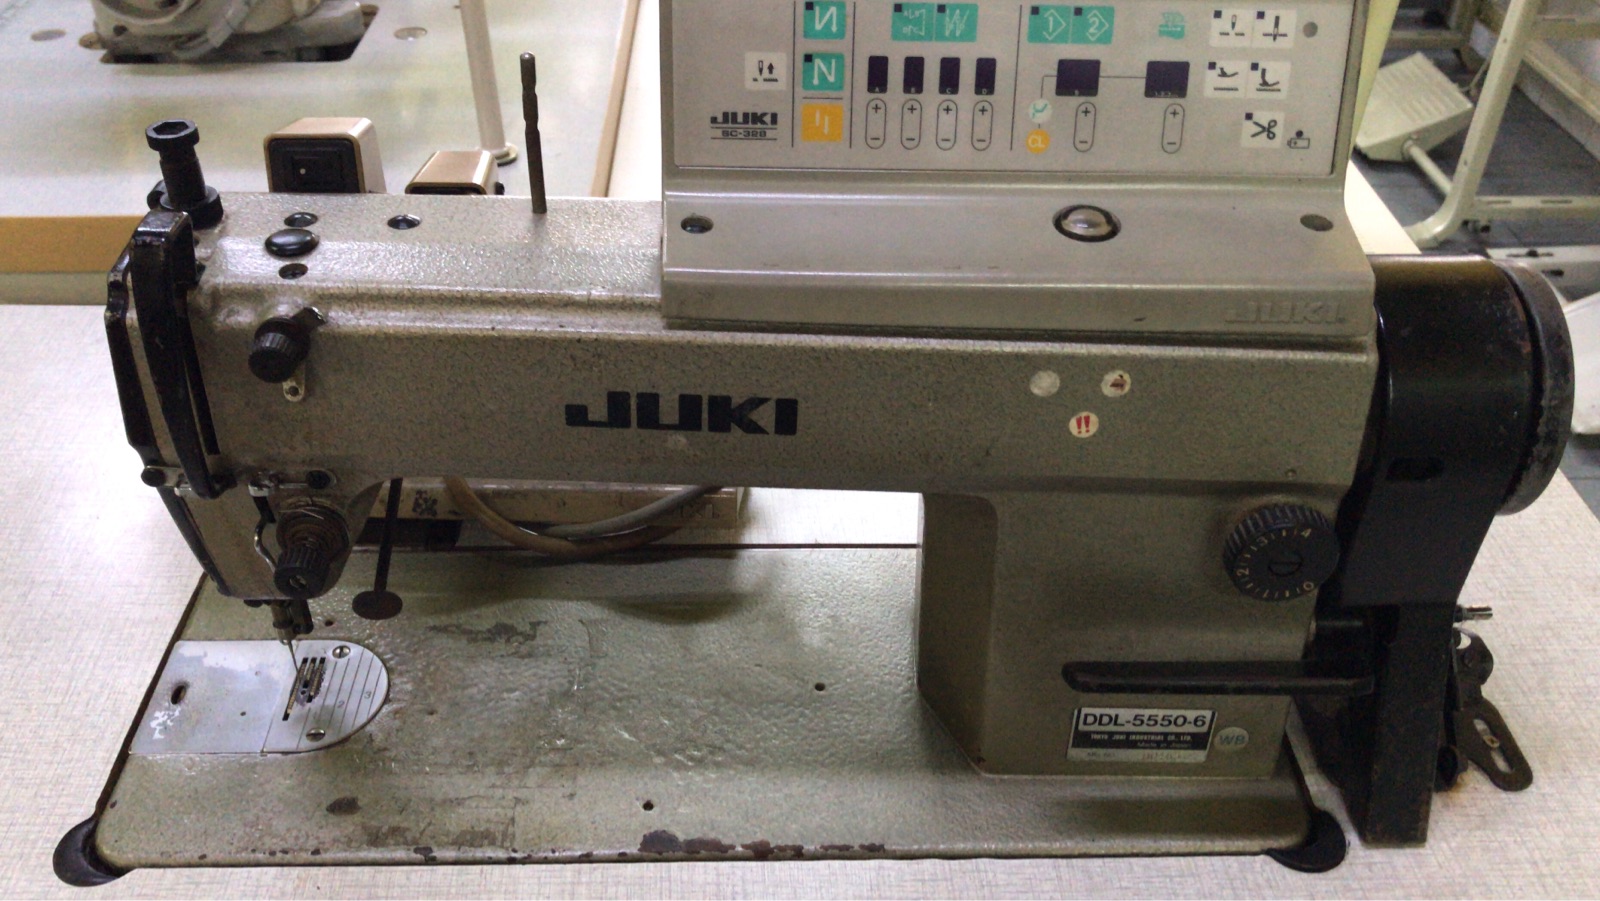 2nd Juki Hi Speed Sewing Machine 